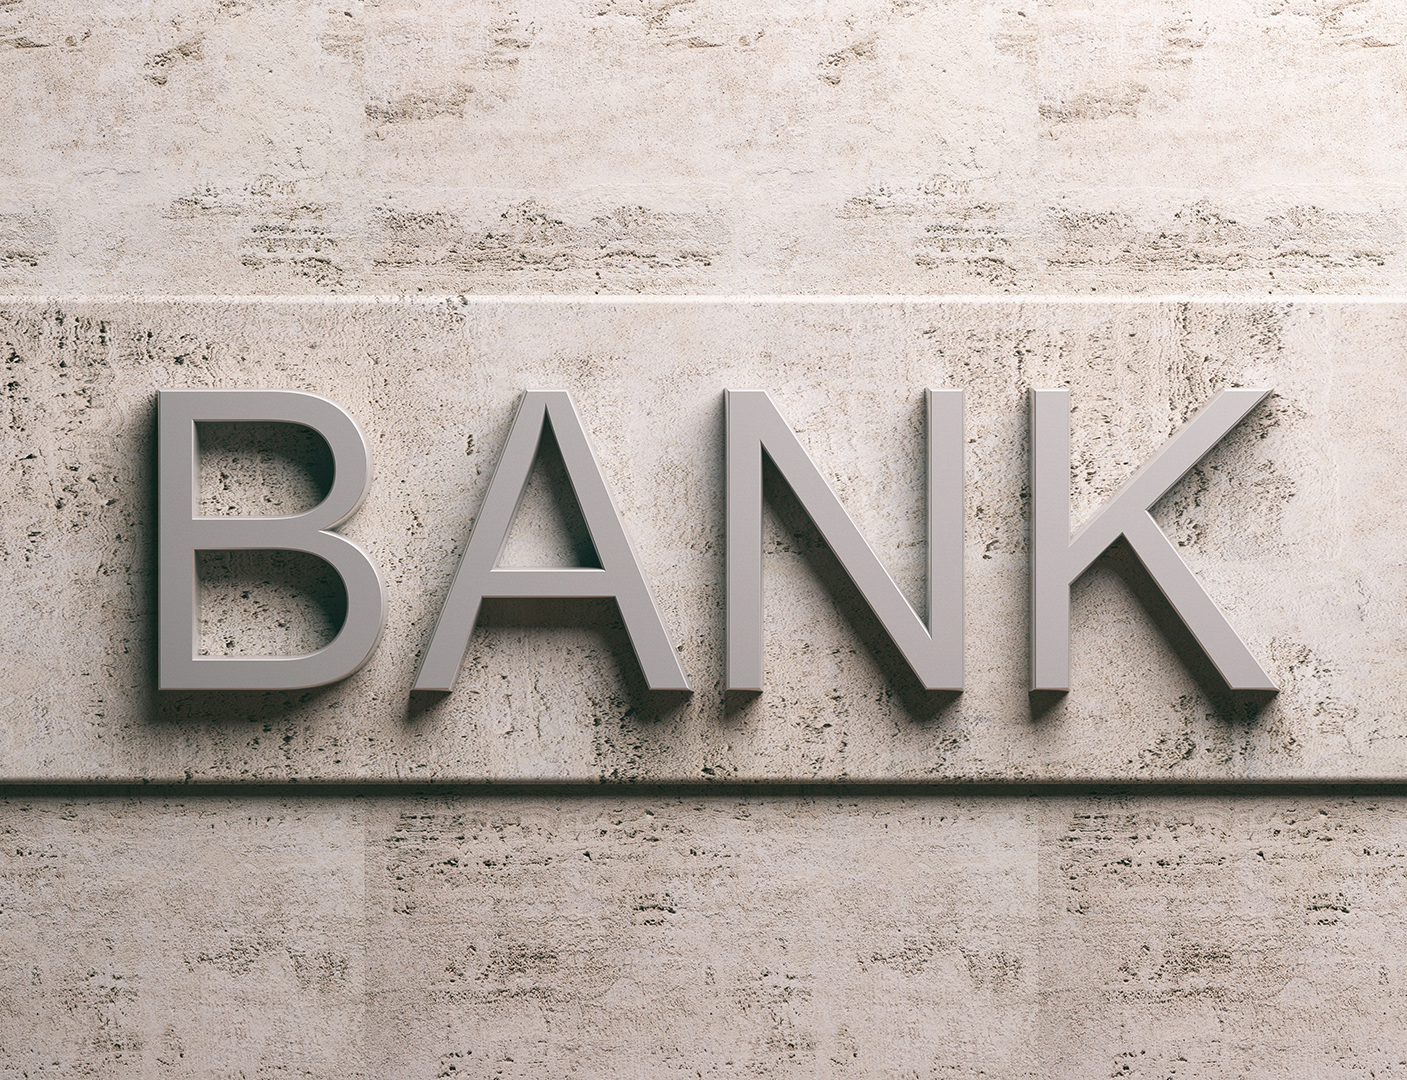 Οι ελληνικές τράπεζες επιστρέφουν στην κανονικότητα